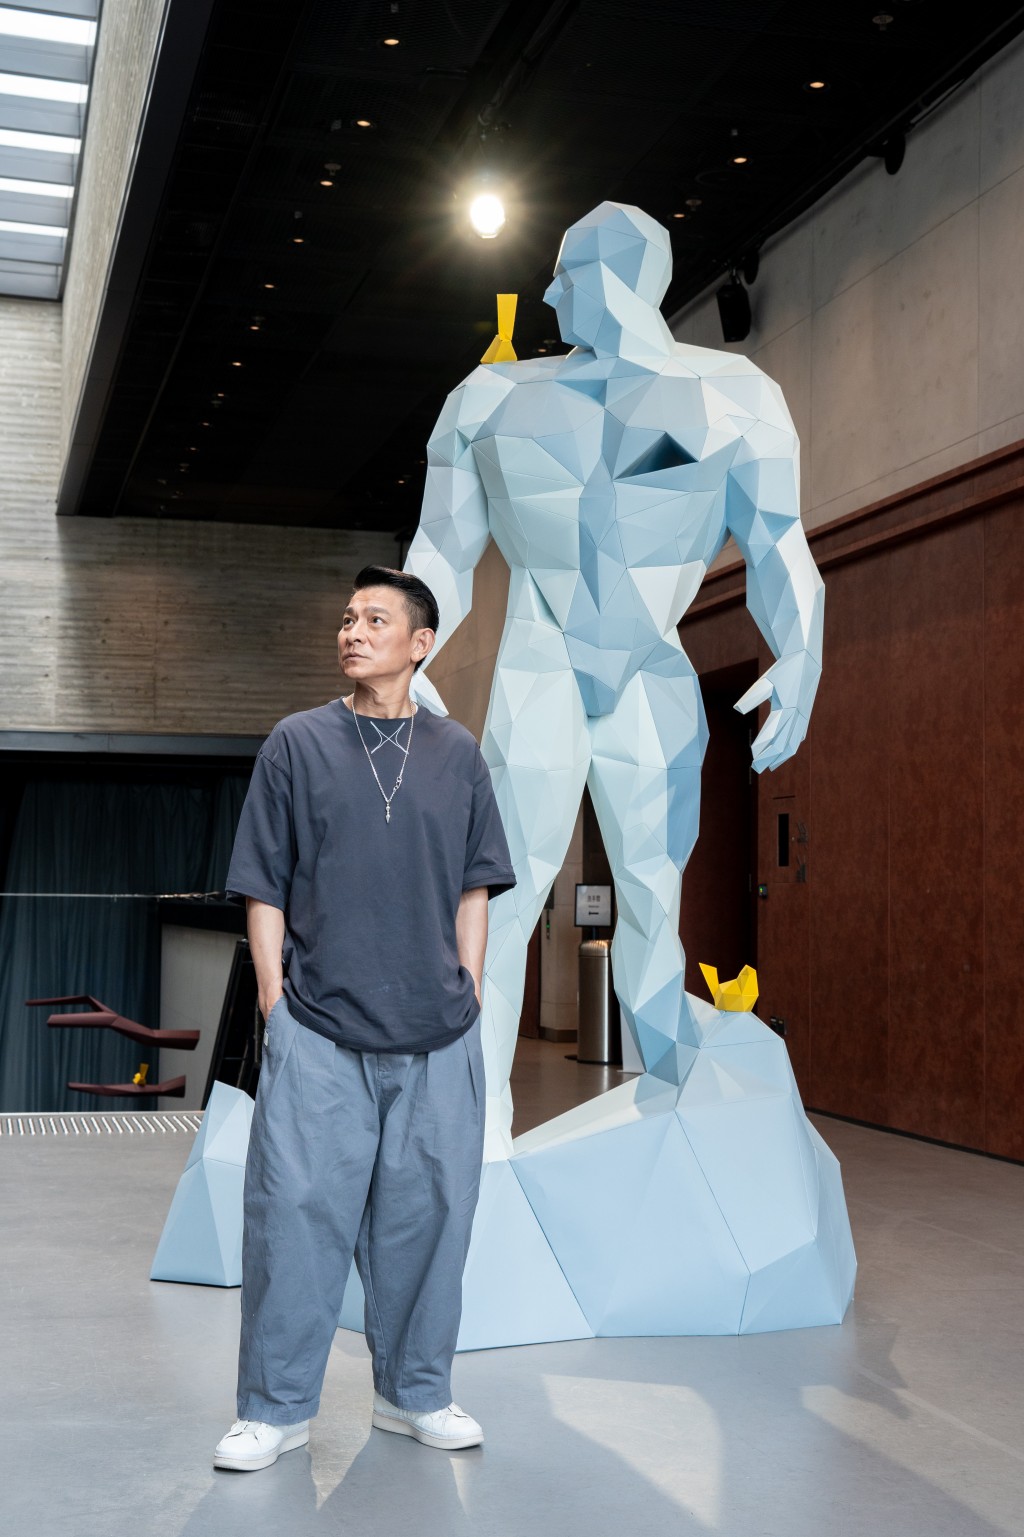 劉德華於8月25日至9月9日假西九文化區藝術公園自由空間舉行「1/X劉德華的藝術空間」。